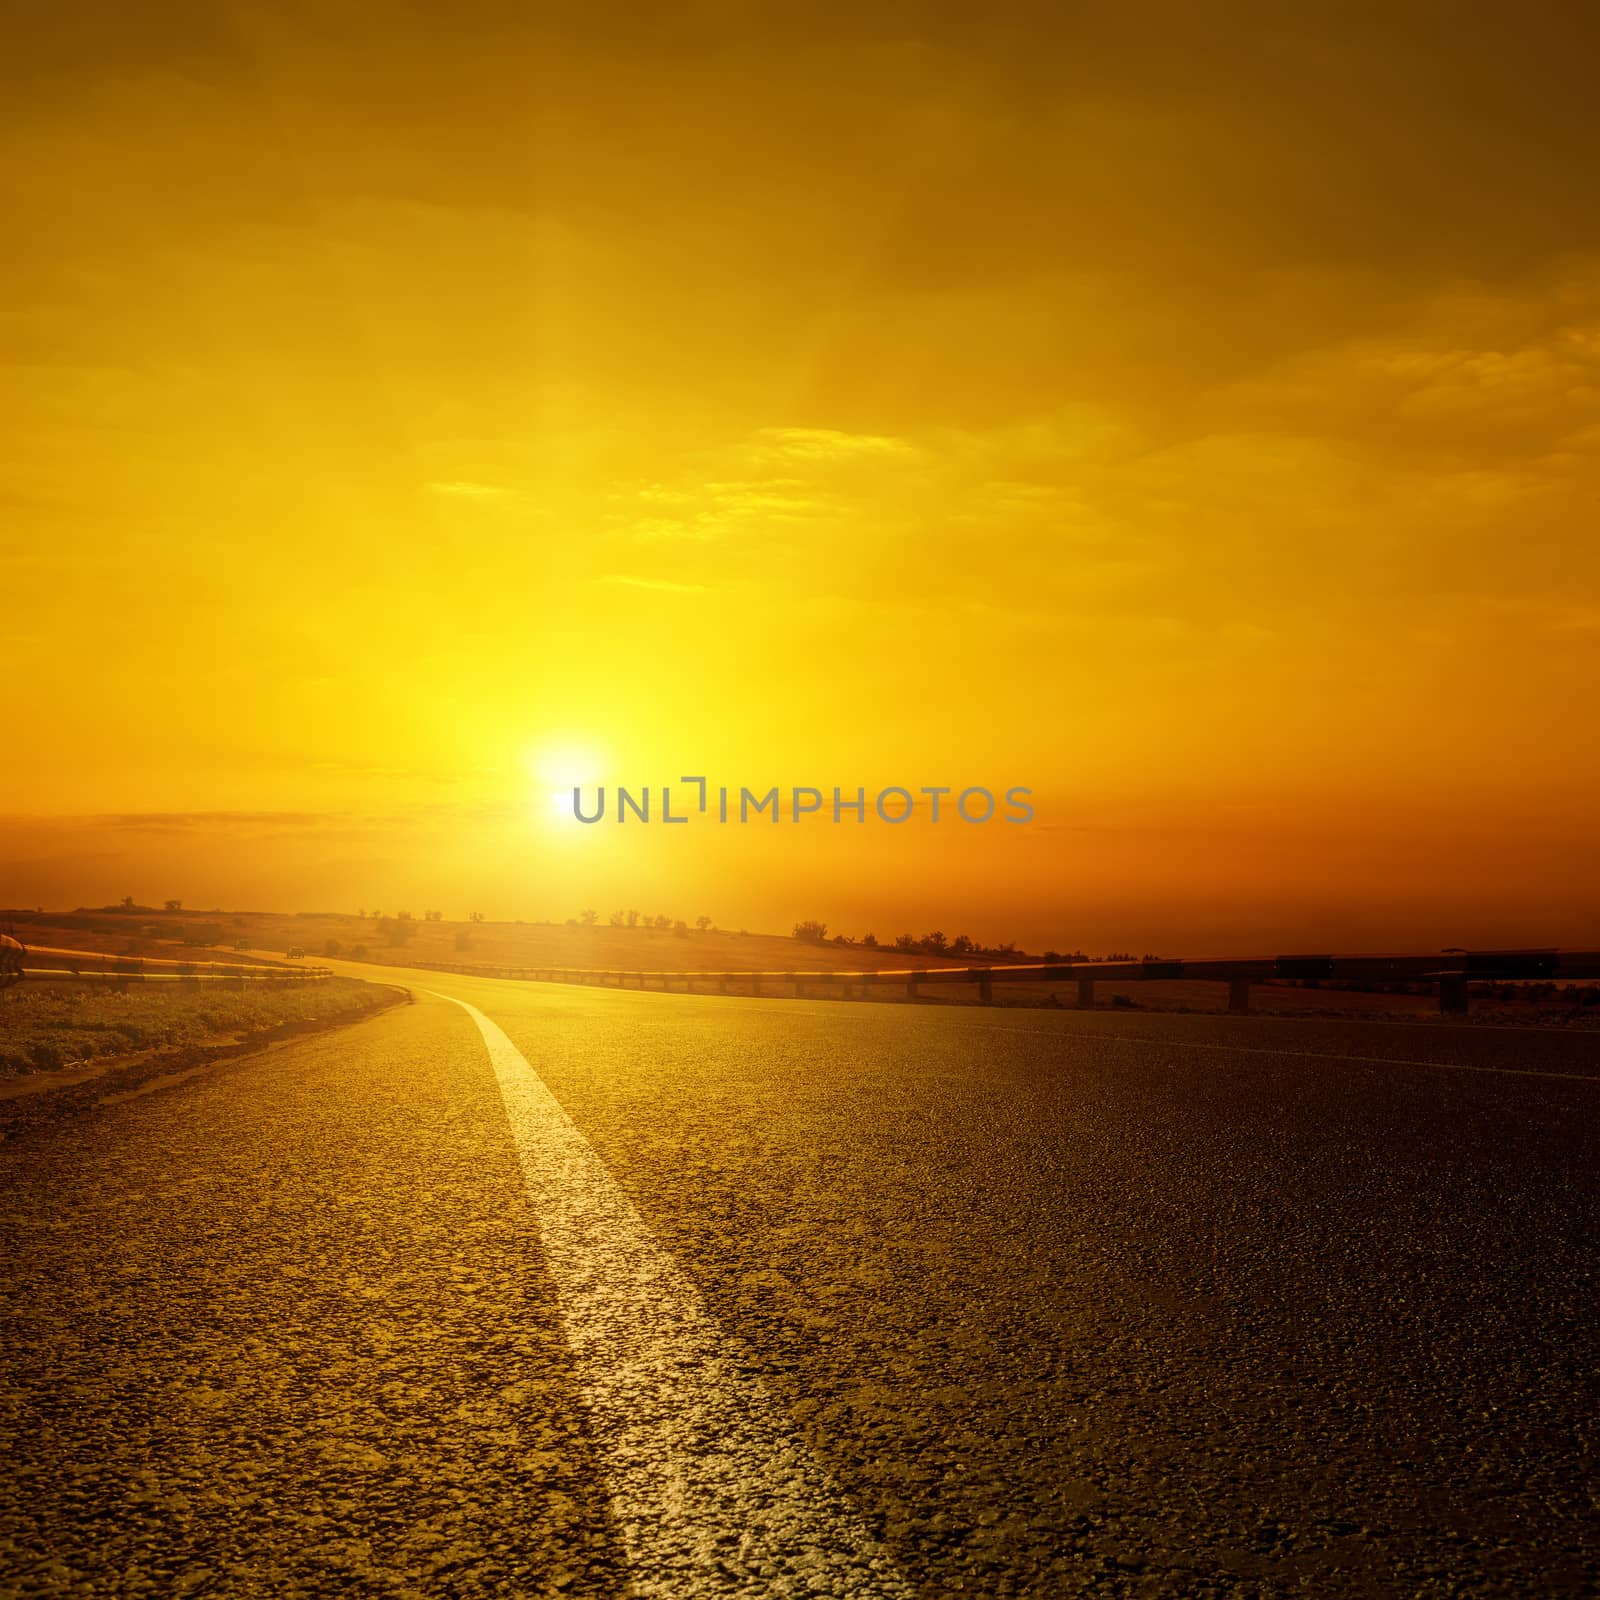 golden sunset over asphalt road